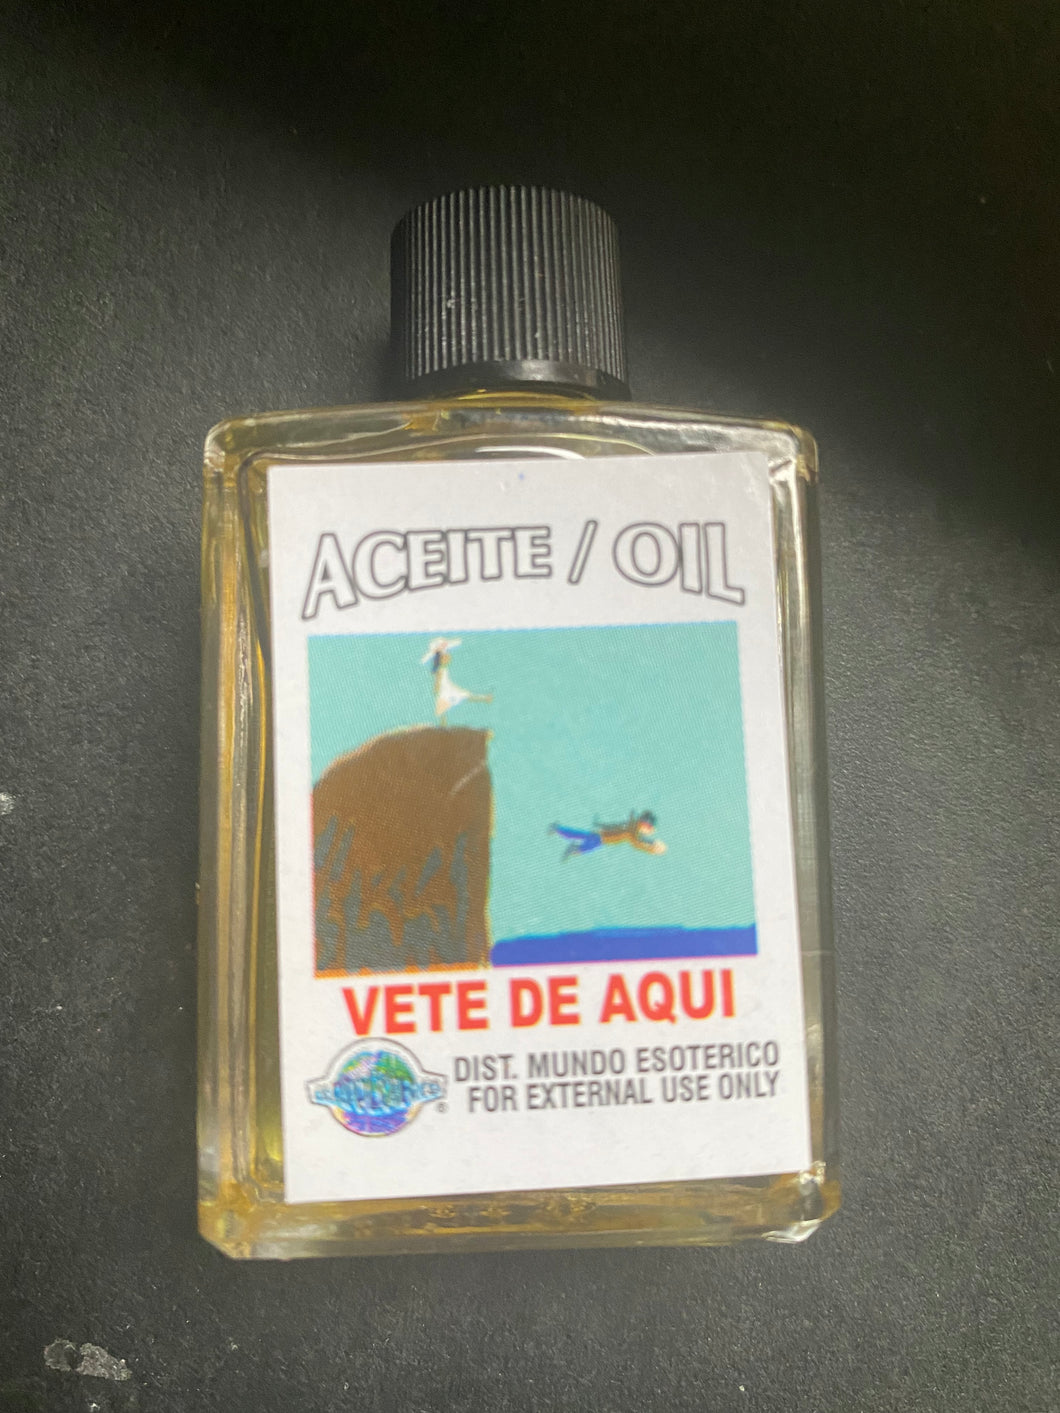 Go away oil in Spanish vete de aquí